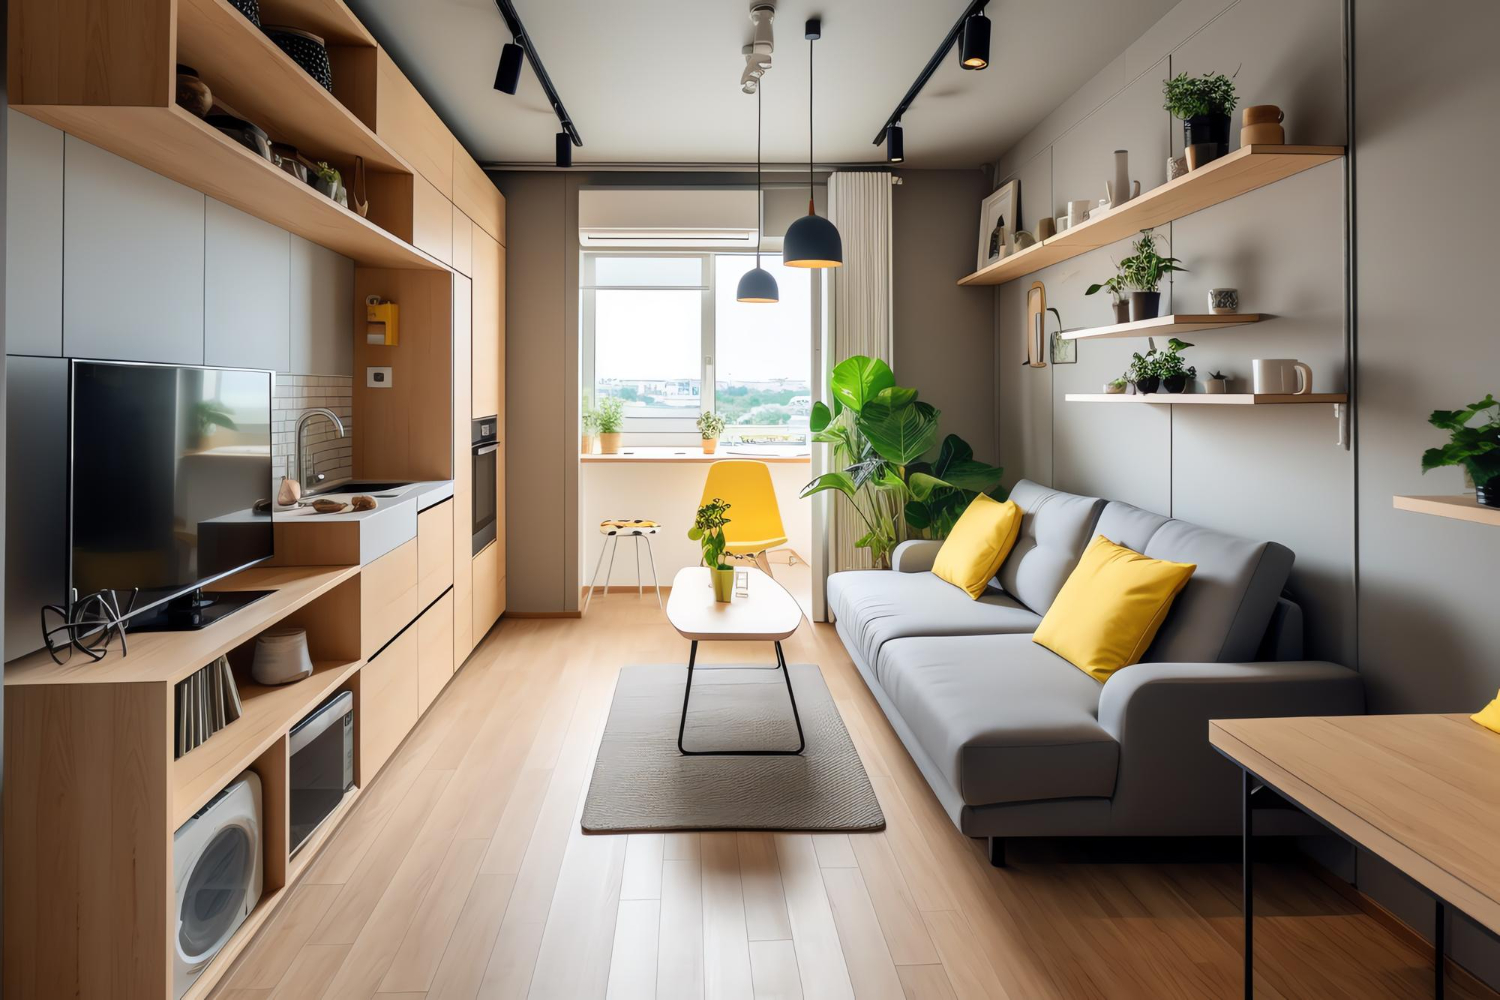 apartamento com design de ambientes pequenos.